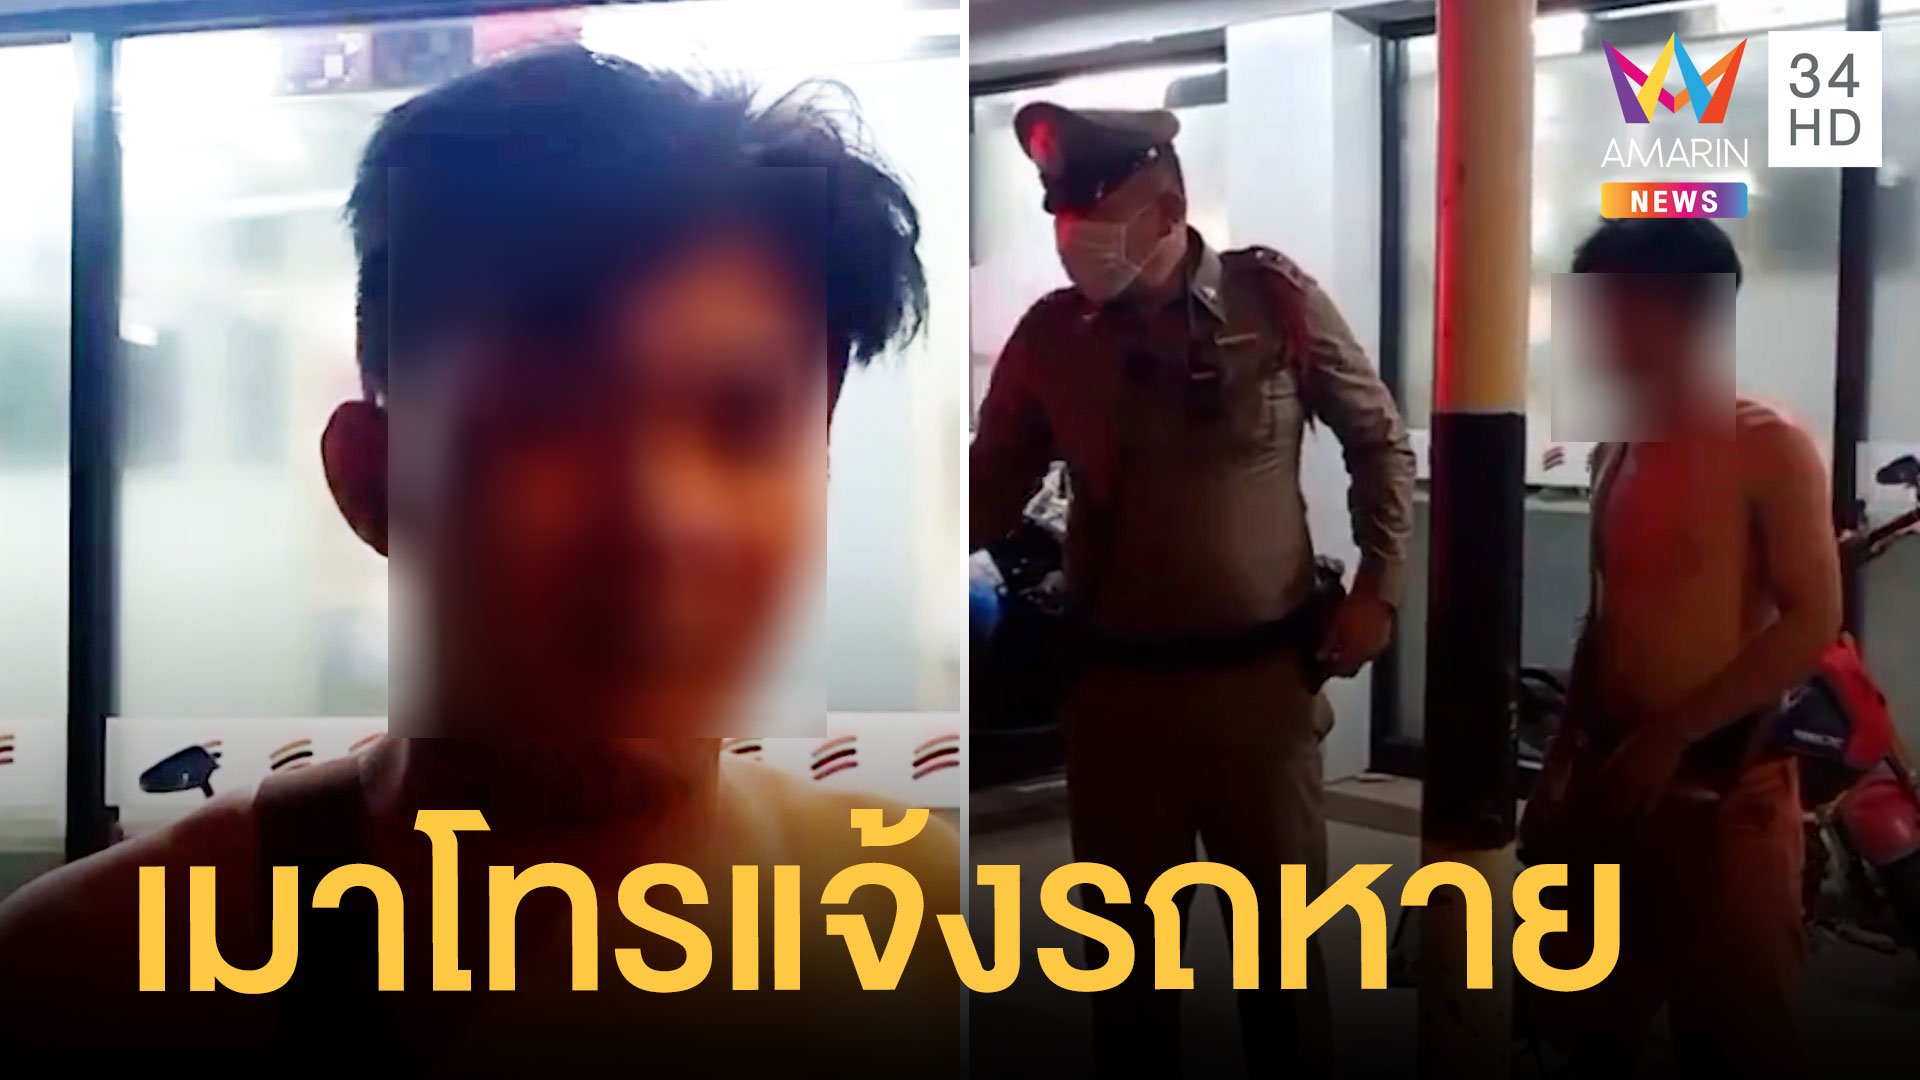 หนุ่มเมาเพี้ยน แจ้งตำรวจถูกคนร้ายชิงทรัพย์ | ข่าวเที่ยงอมรินทร์ | 9 ม.ค. 65 | AMARIN TVHD34